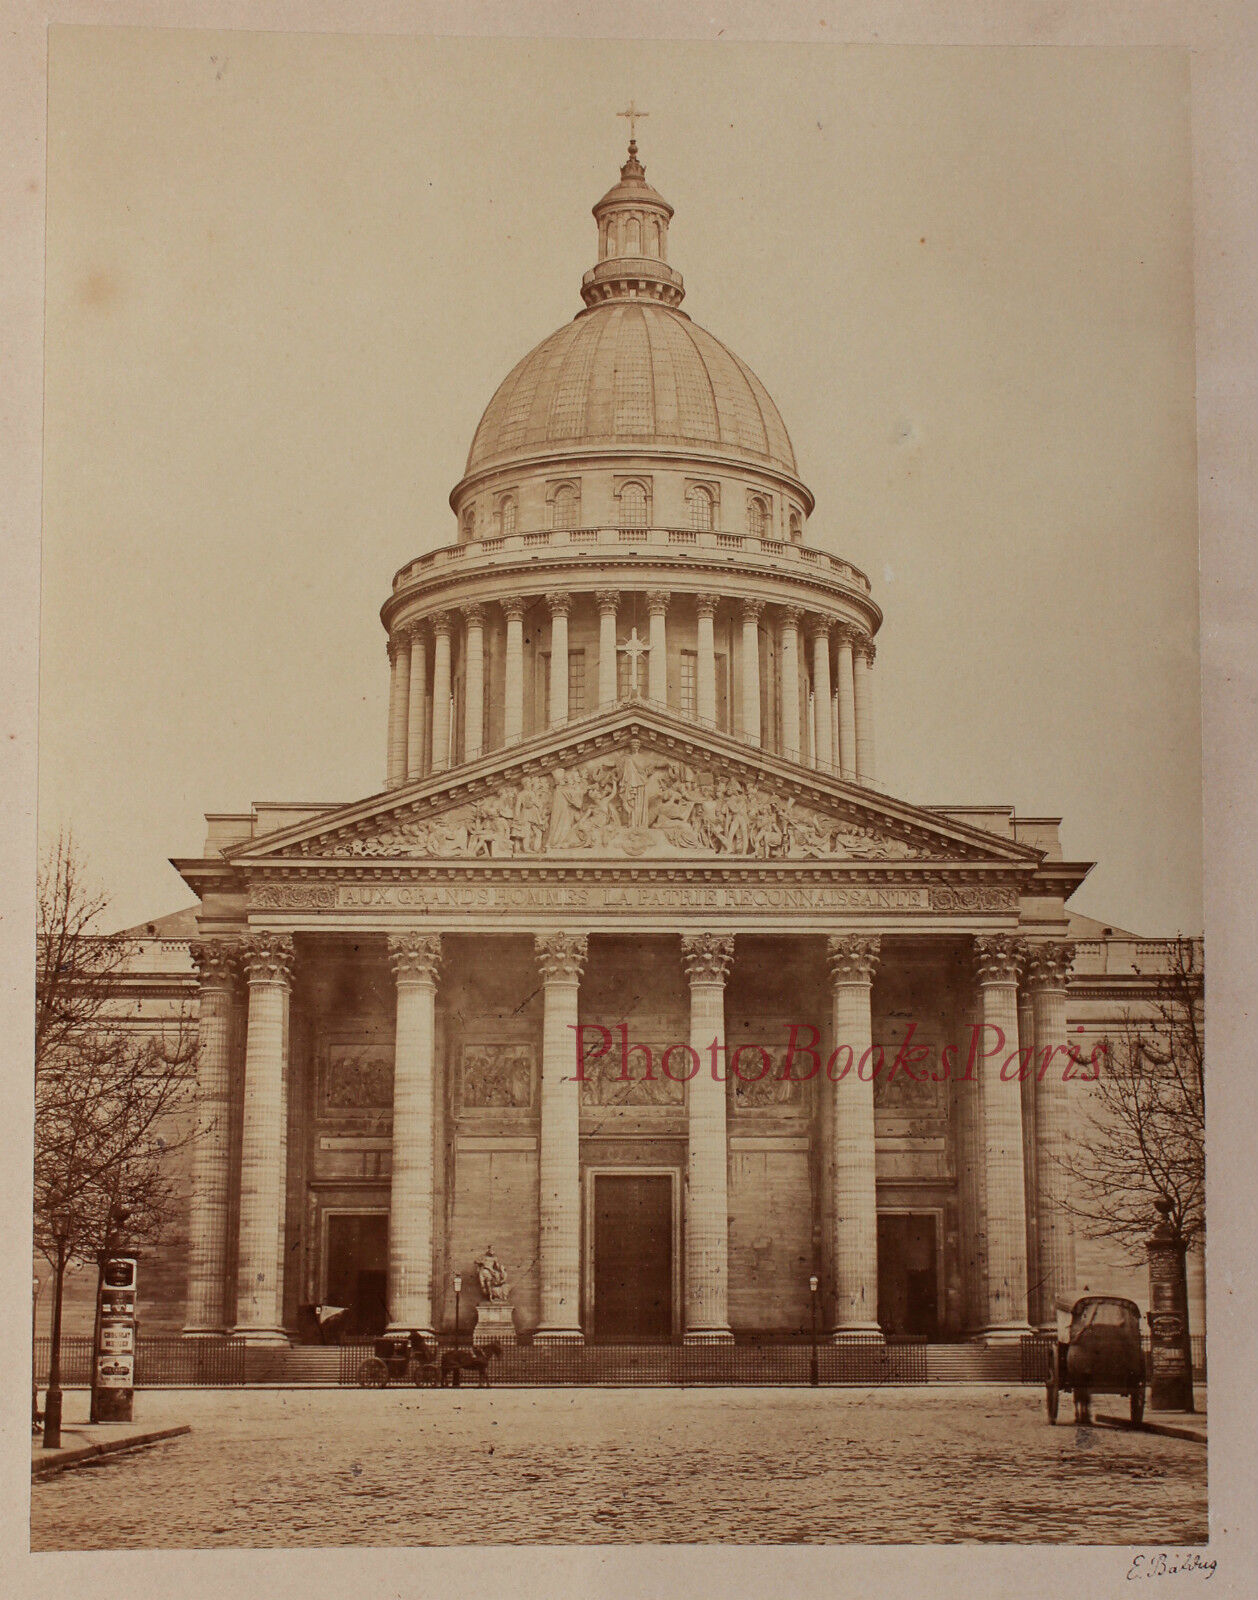 Paris Le Panthéon Sainte Geneviève Photo E. Baldus Vintage Albumin Albumin 1865